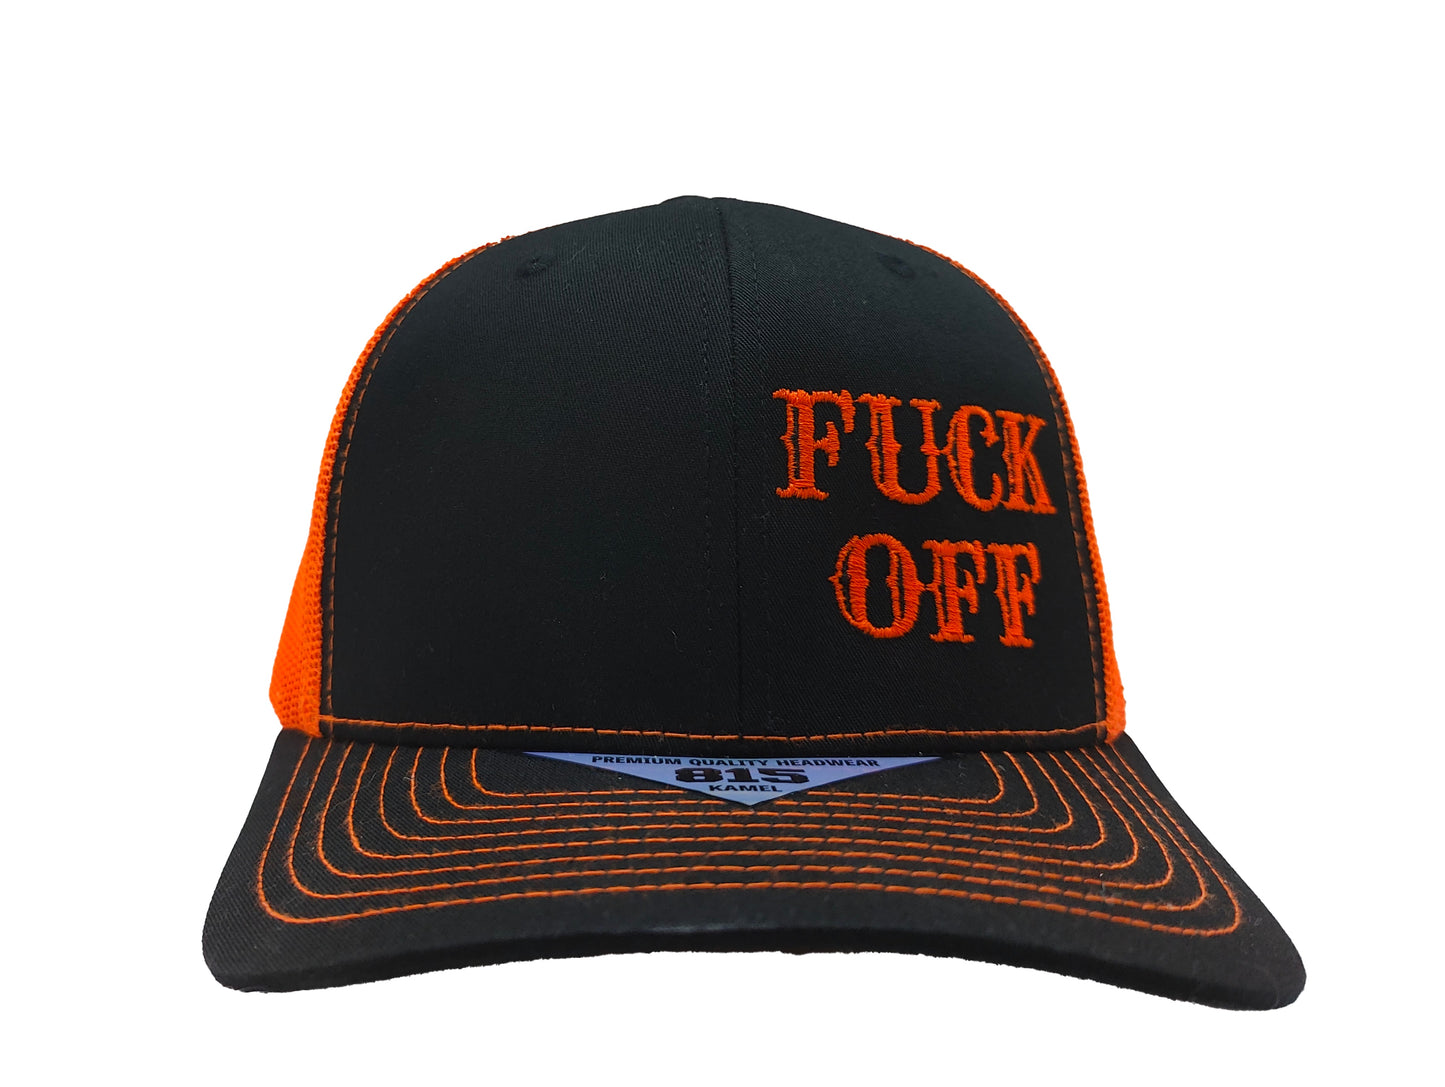 FUCK OFF Kamel Adult Hat 815 Black / Orange